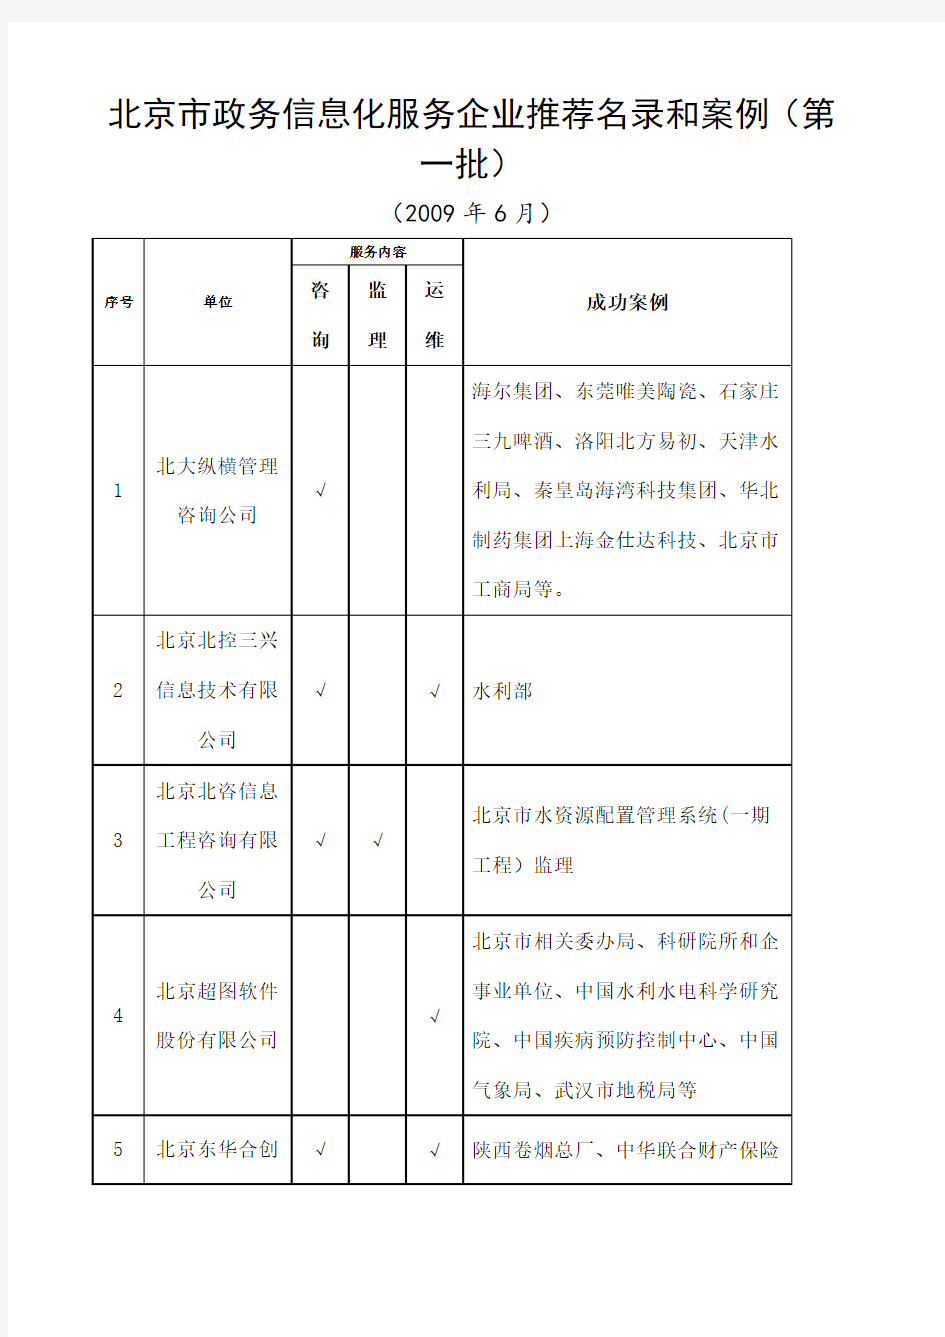 北京市政务信息化服务企业名录和案例第一批